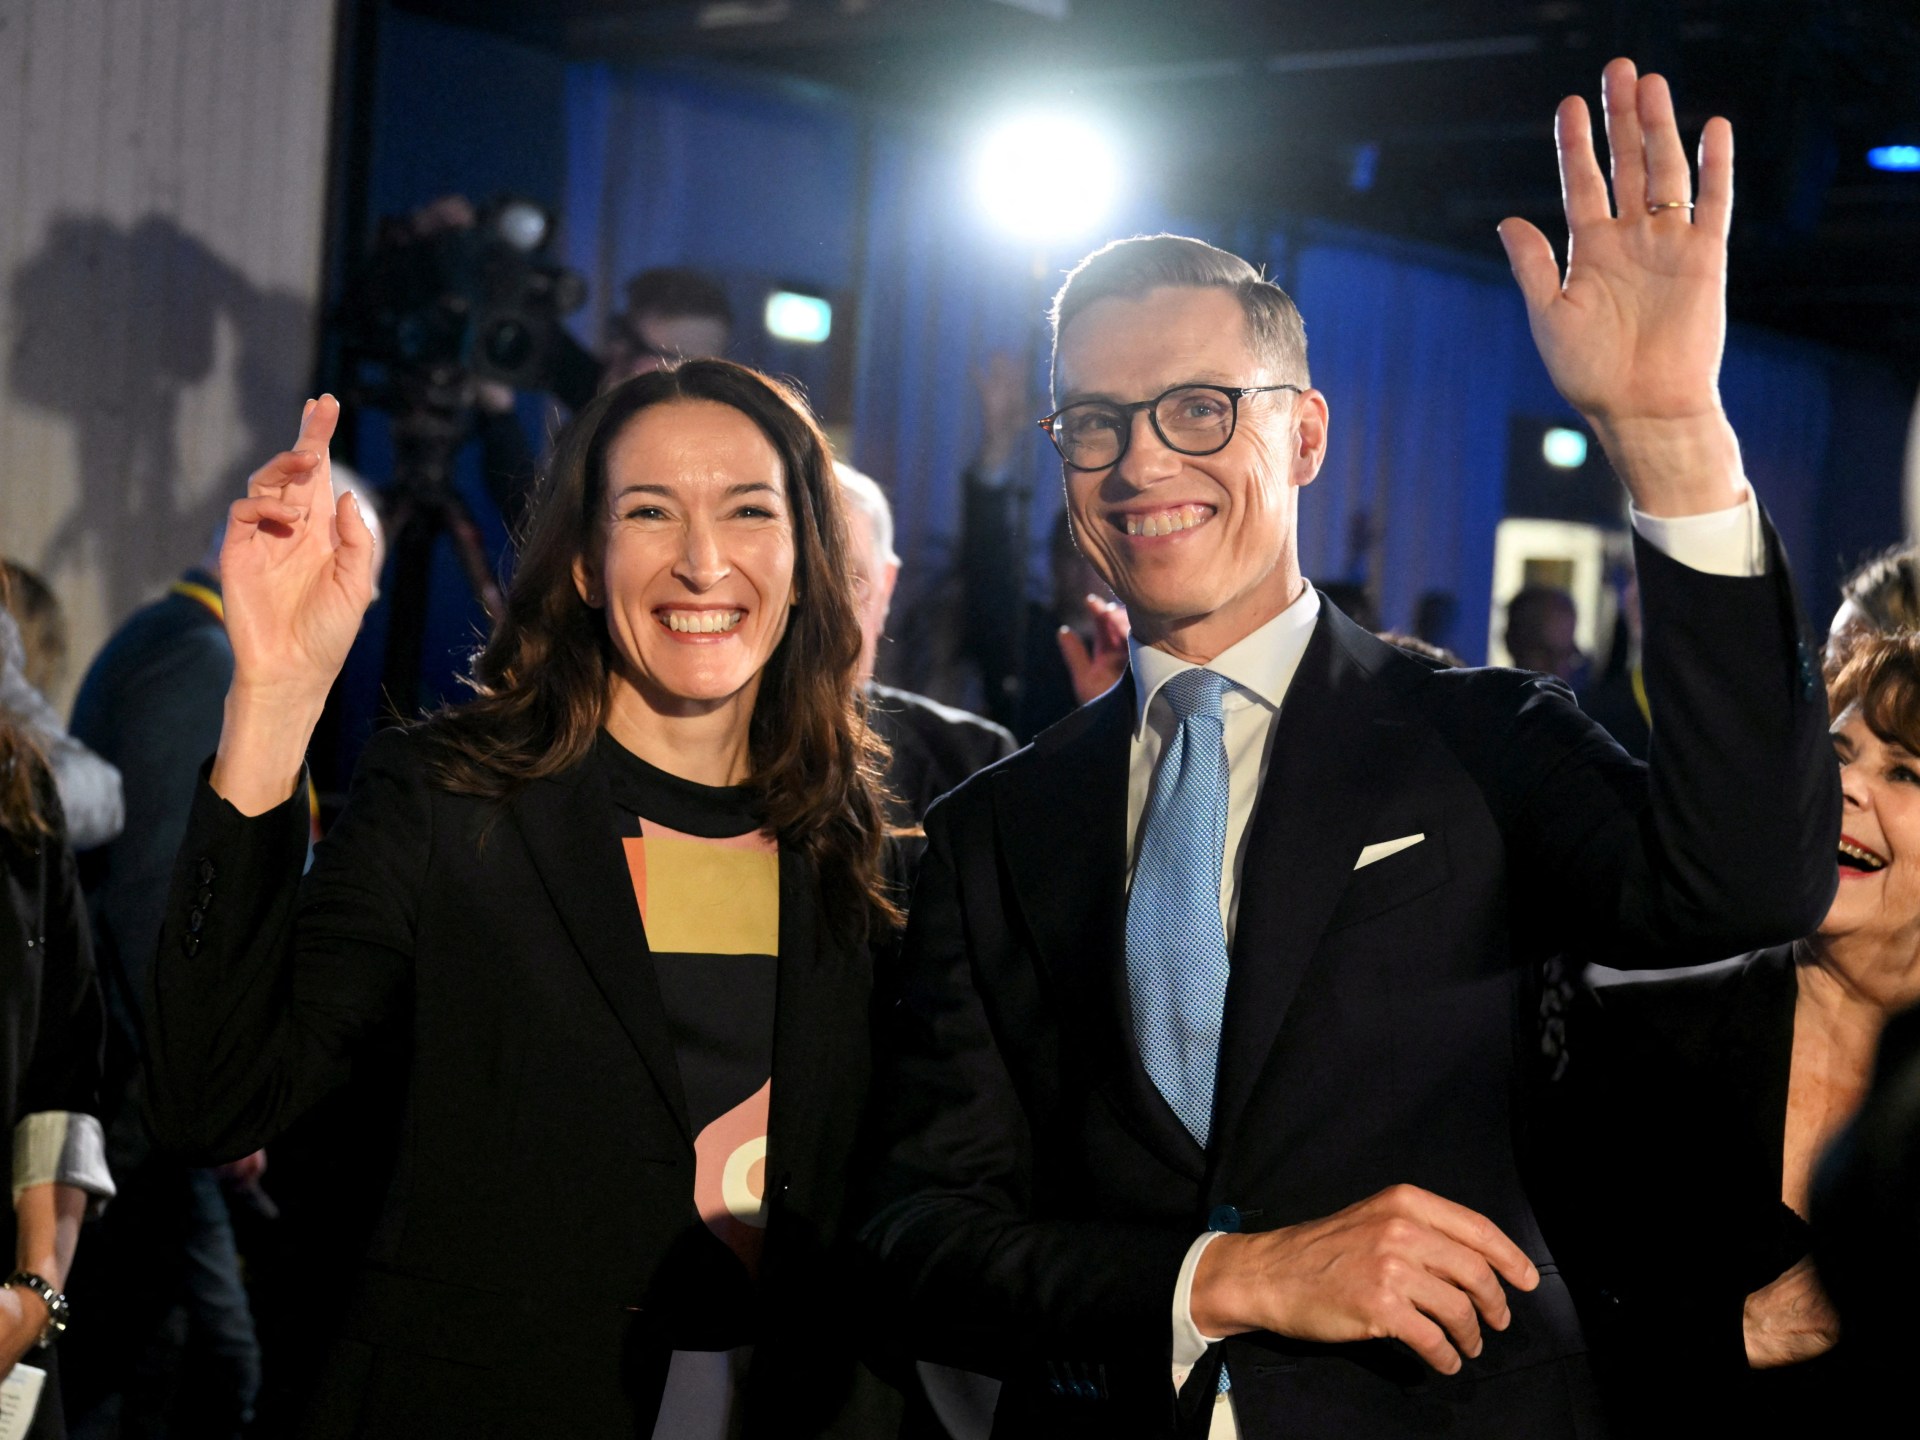 Stubb vencerá o primeiro turno das eleições presidenciais da Finlândia  Notícias eleitorais